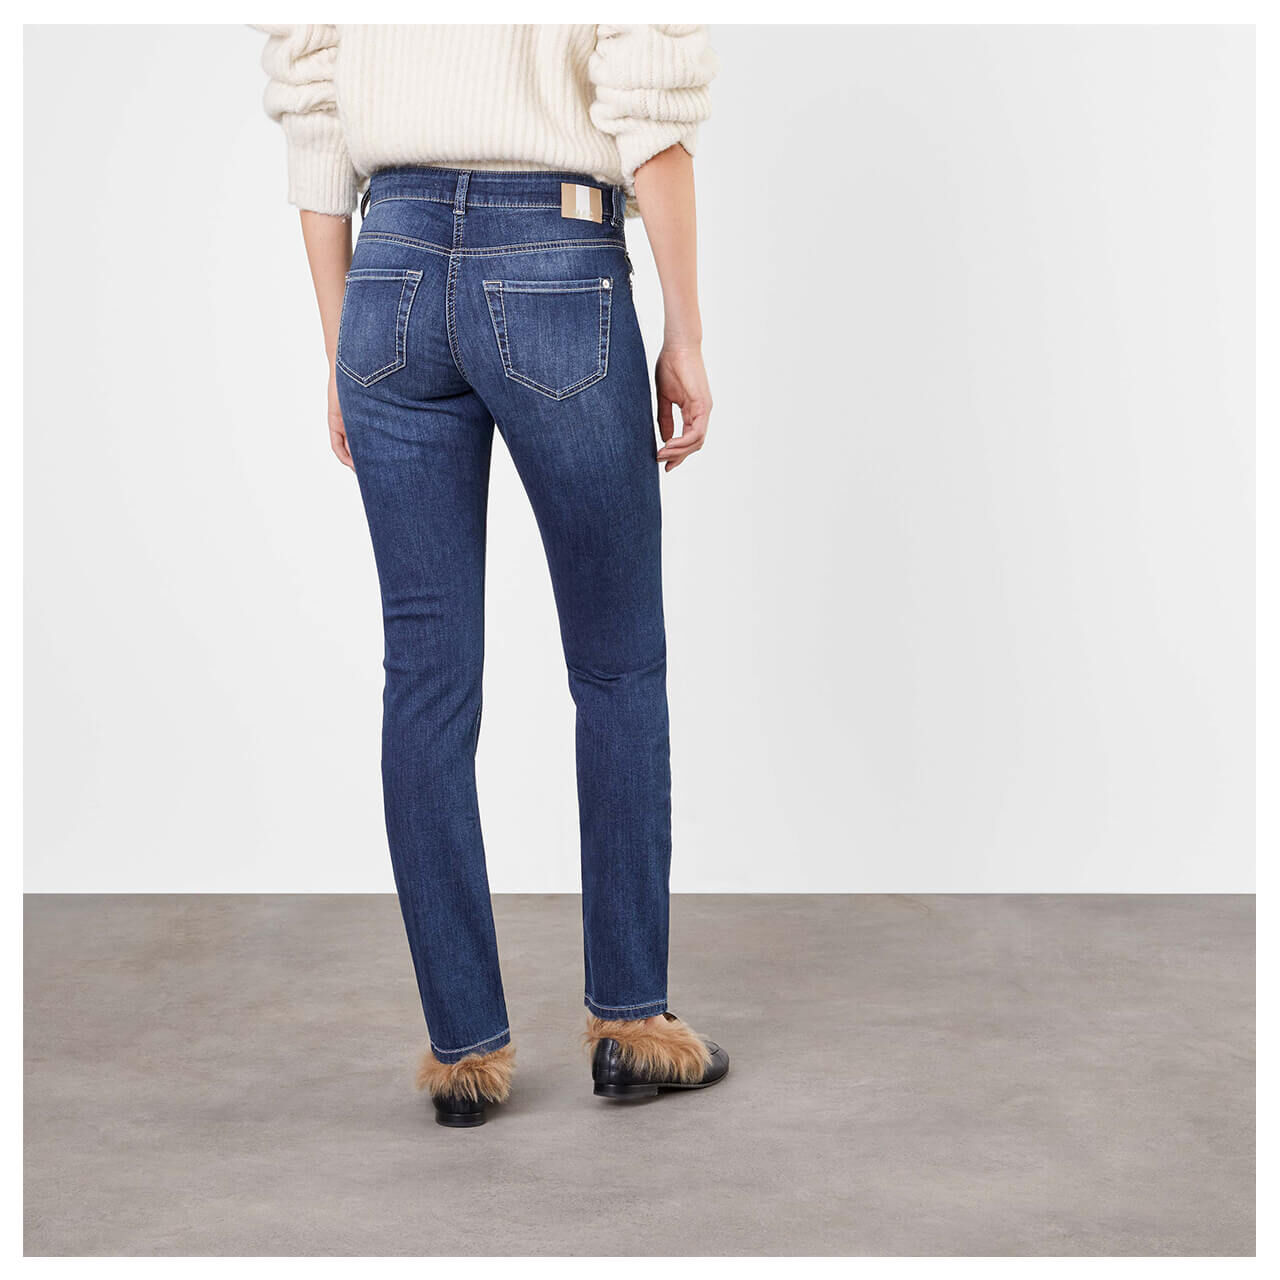 MAC Slim Jeans für Damen in Dunkelblau angewaschen, FarbNr.: D845